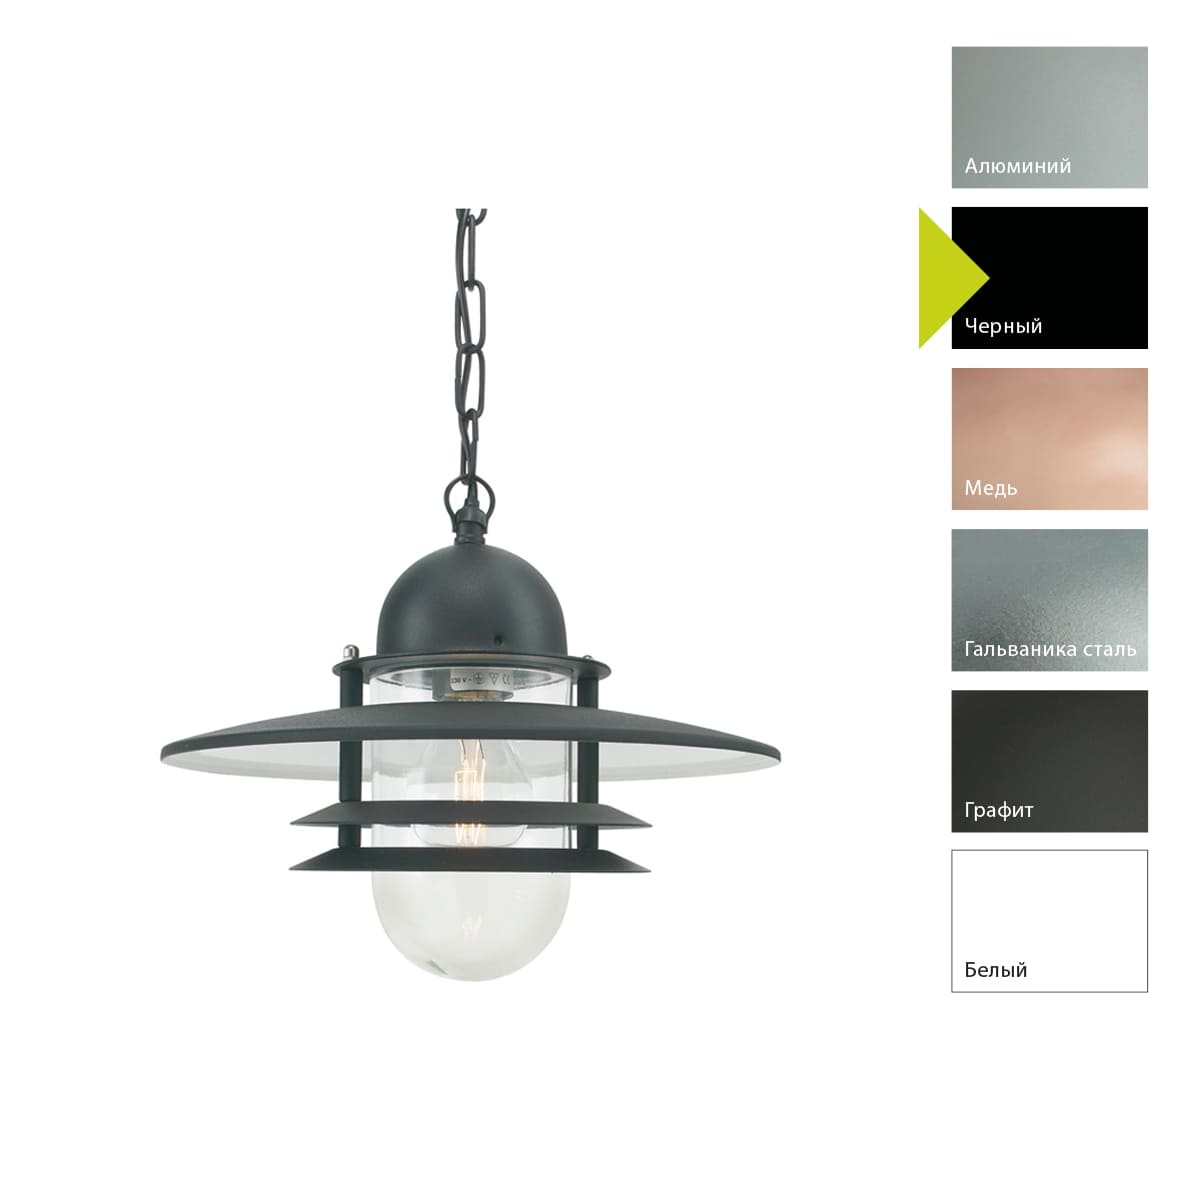 Уличный подвесной светильник Norlys OSLO 240A/B, цвет черный 240A/B - фото 1